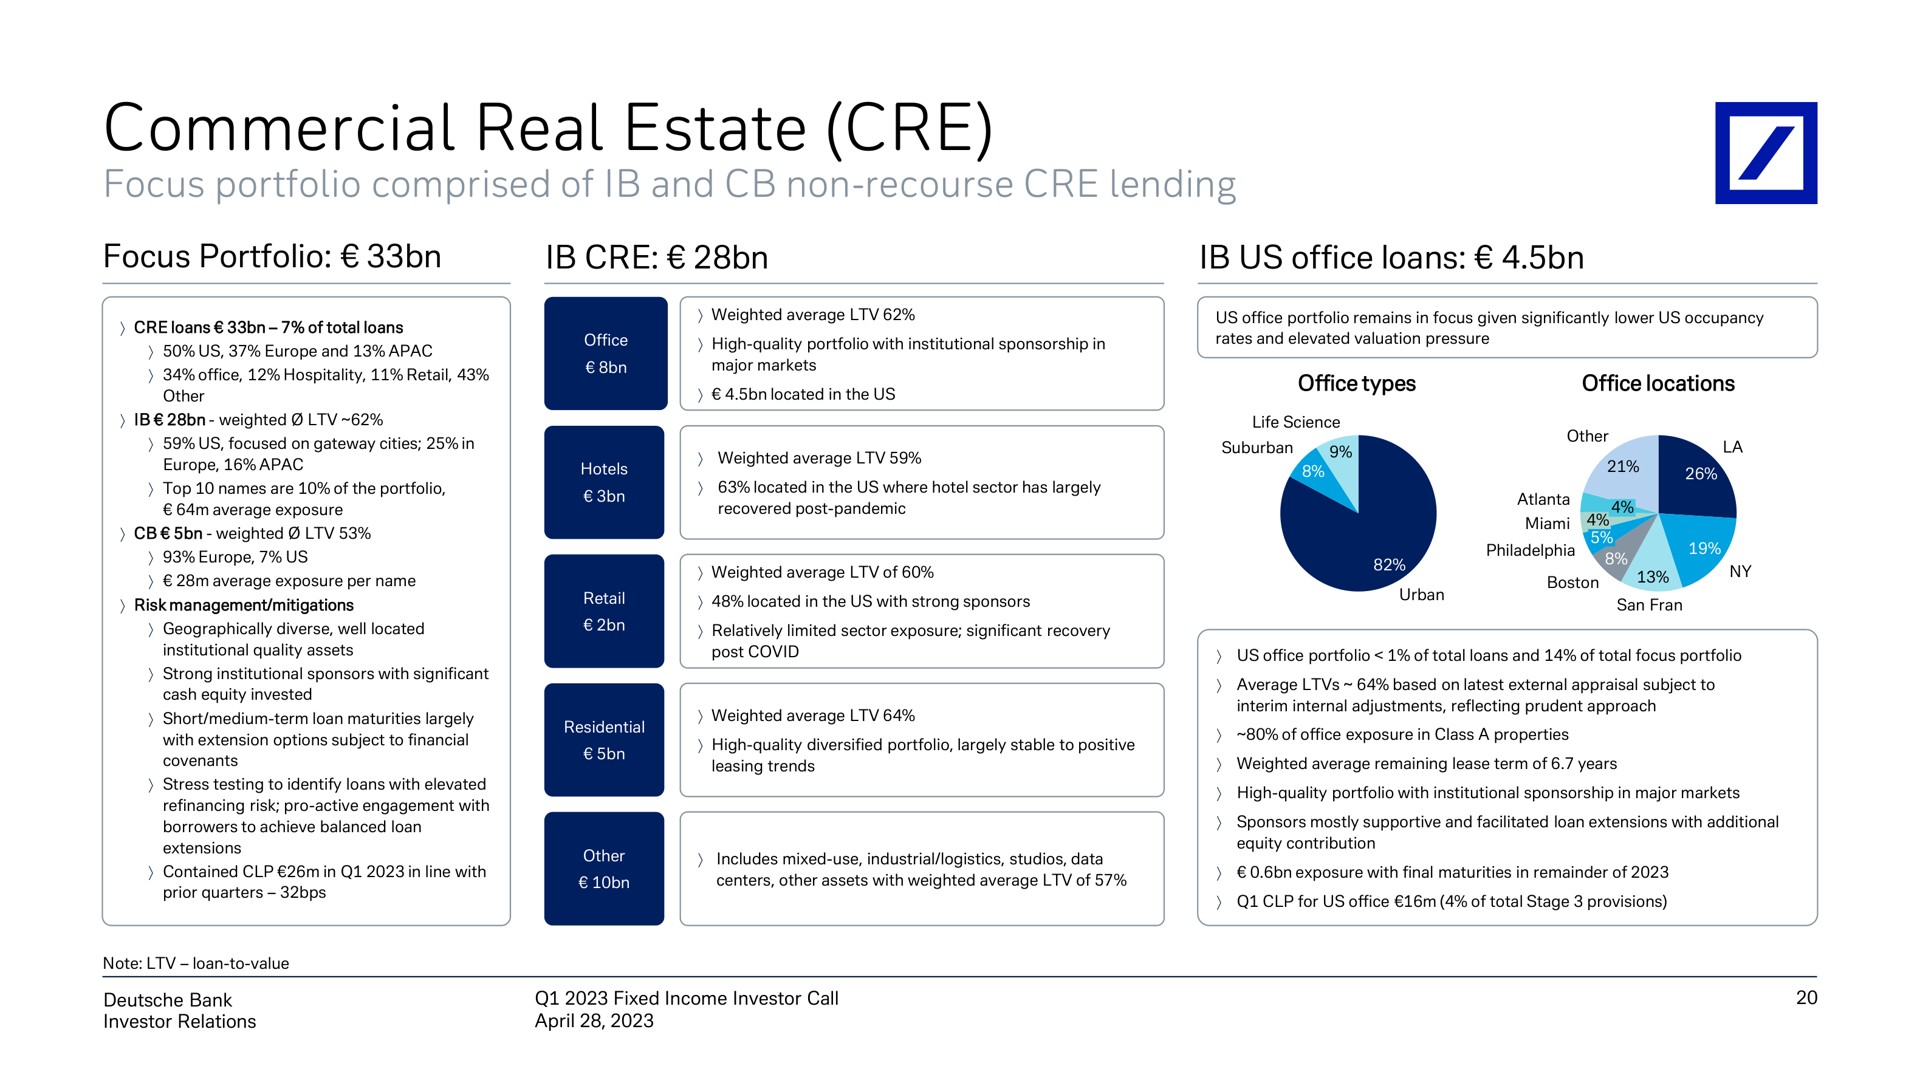 commercial real estate | Deutsche Bank